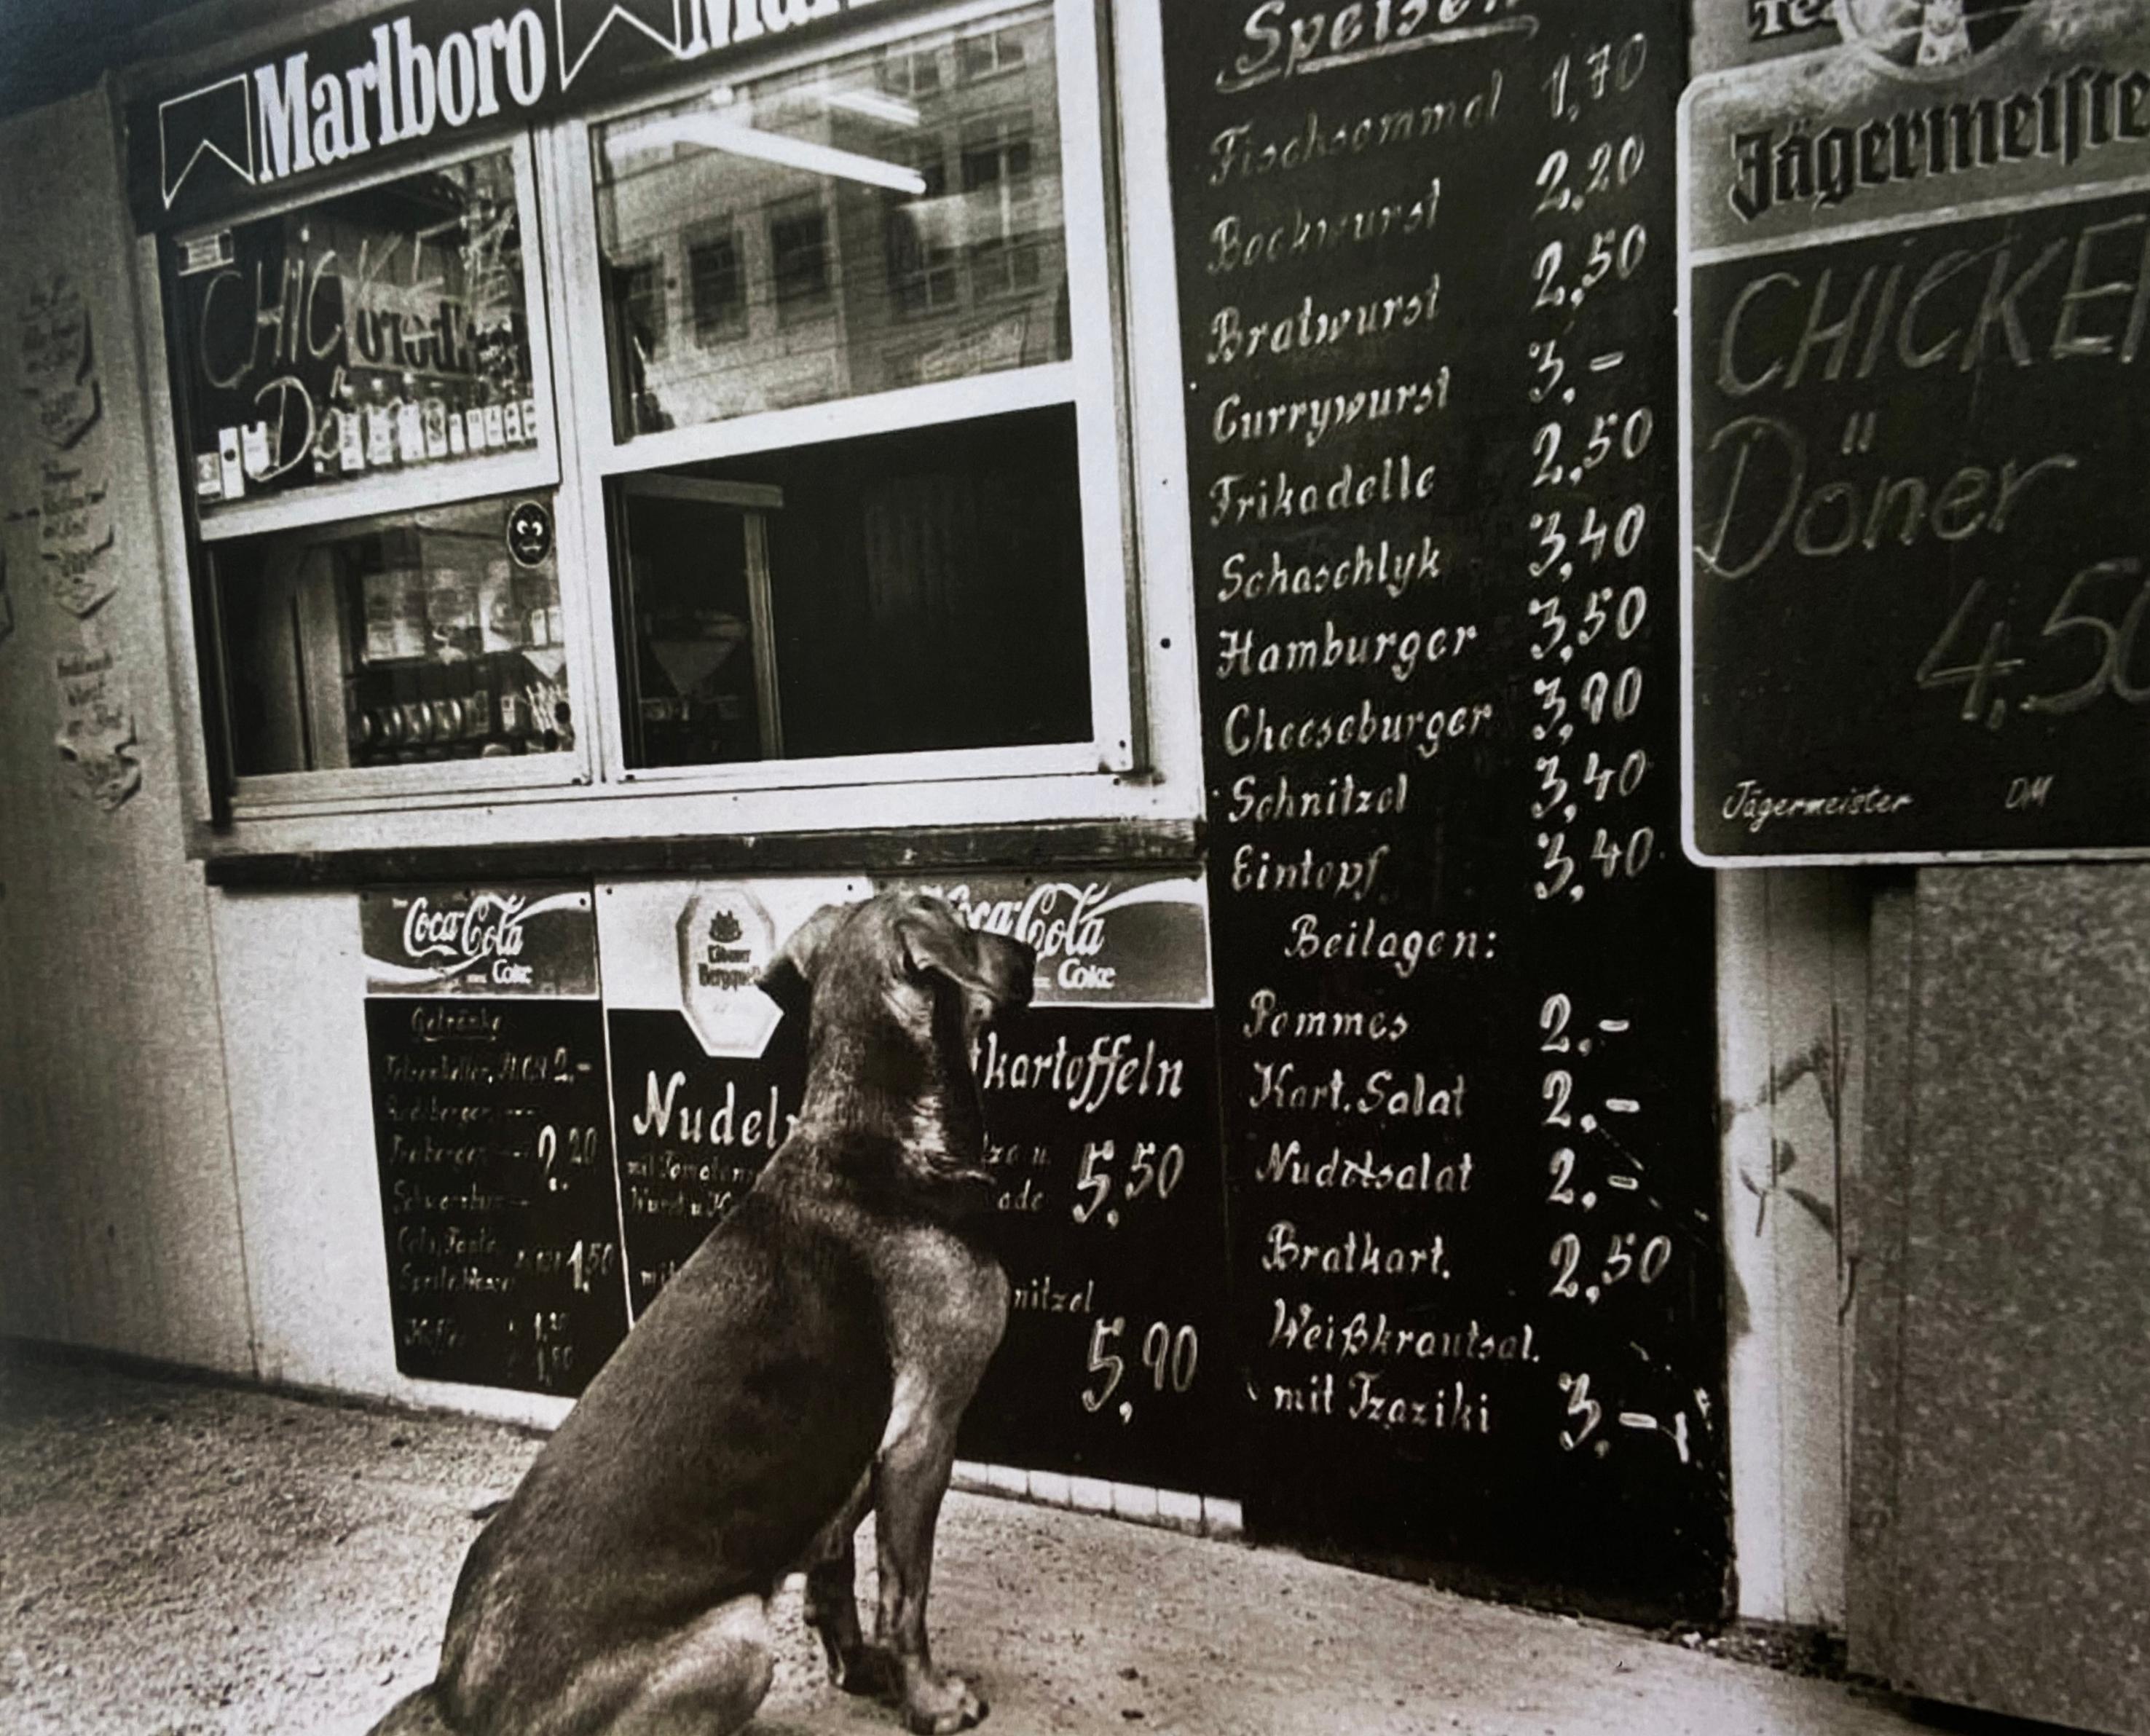 "Schnitzel Please!, " Dresden, Germany, 1999 